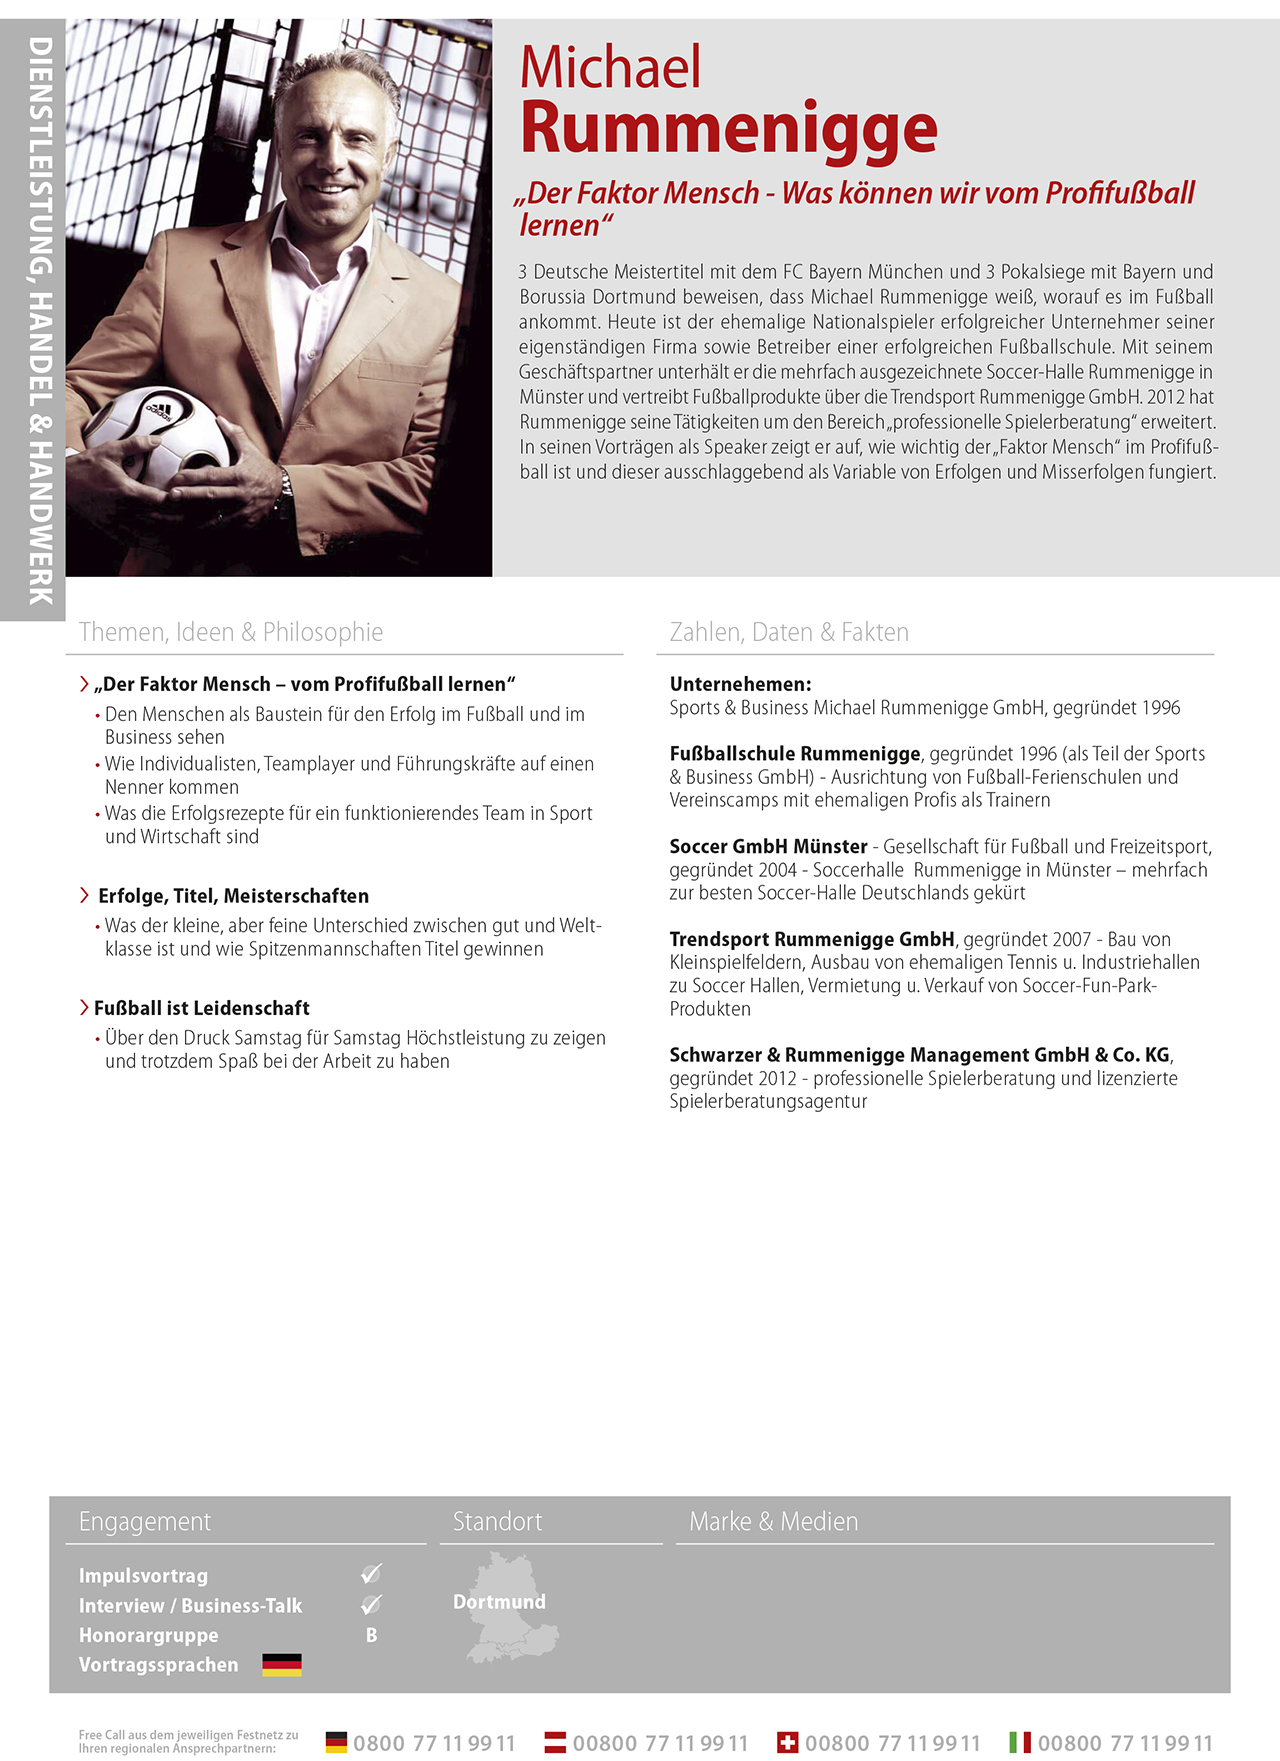 Michael Rummenigges Profil bei Speakers Excellence Deutschland